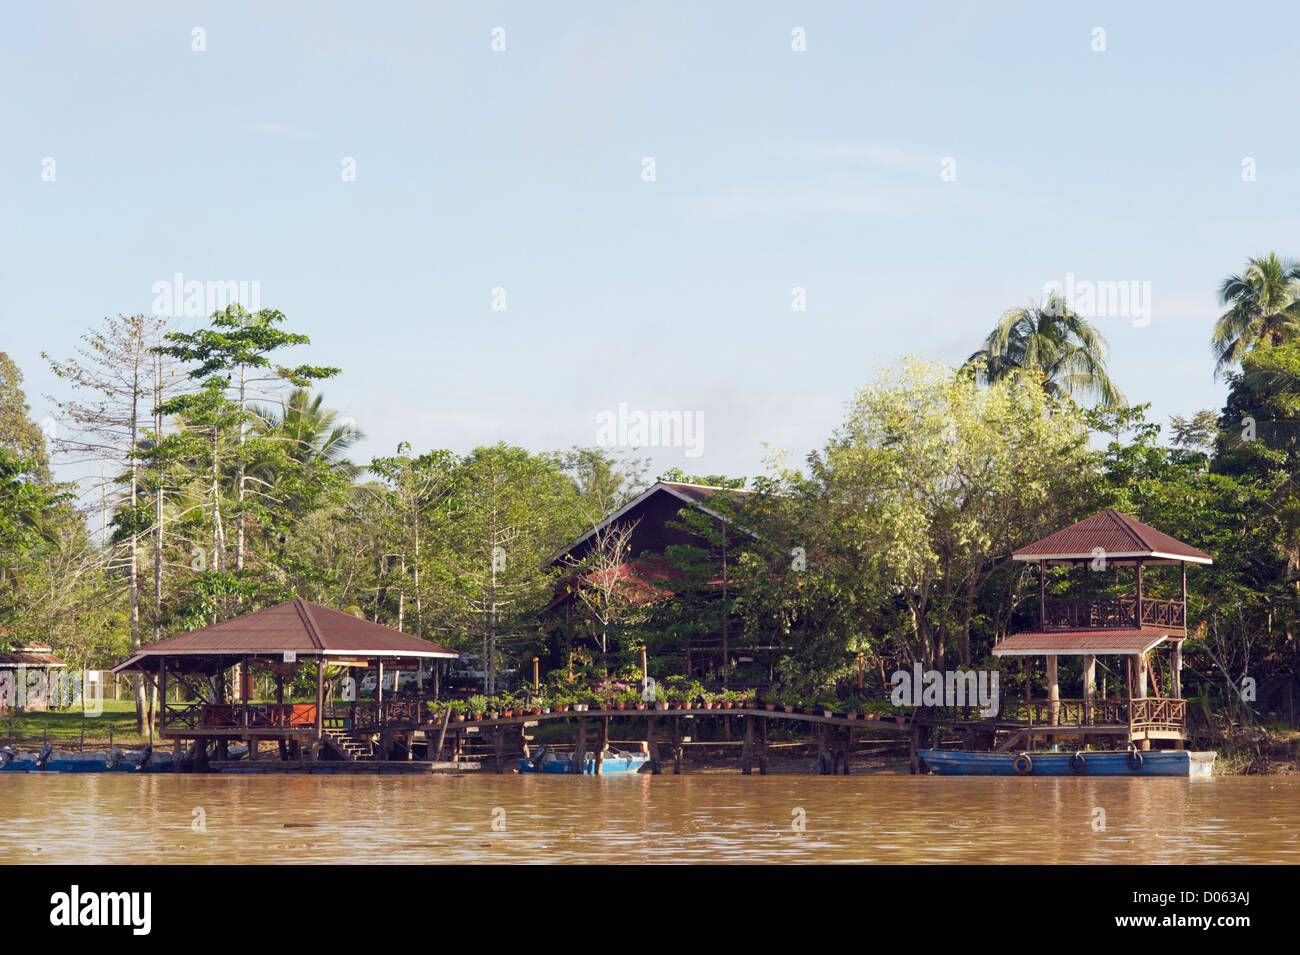 Malaysian homes on banks of Kinabatangan River, Sabah, Borneo Stock Photo